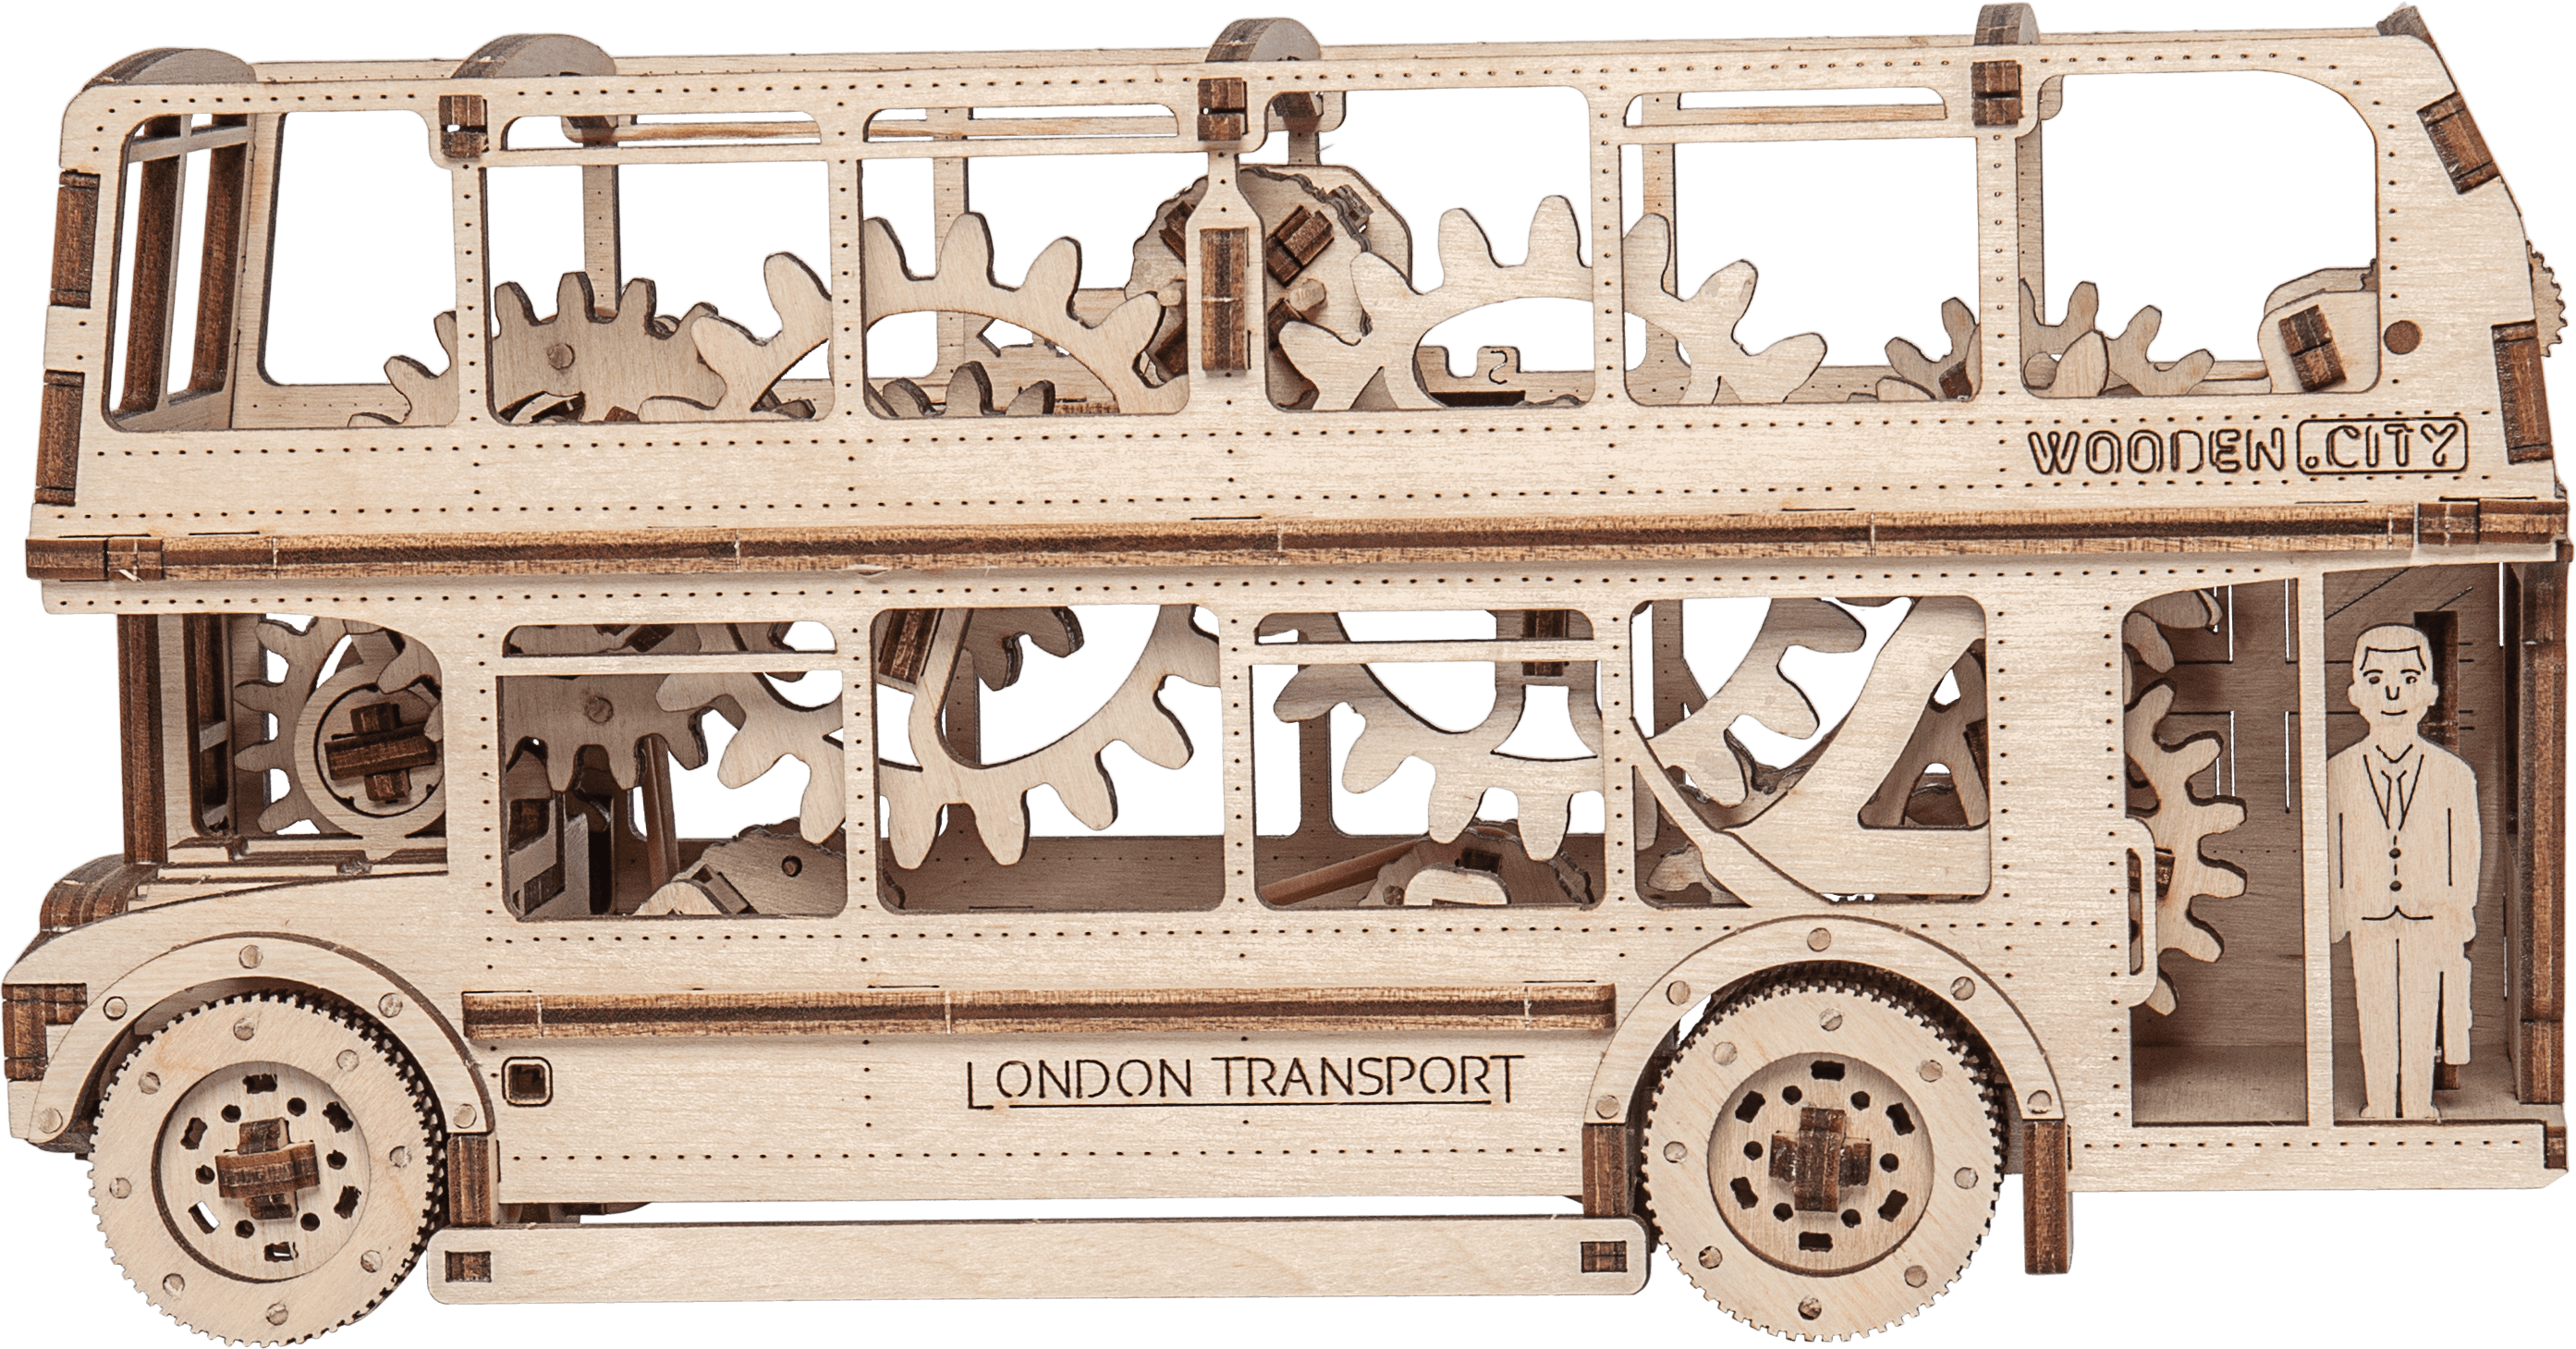 Drewniane Puzzle 3D – Autobus Londyński